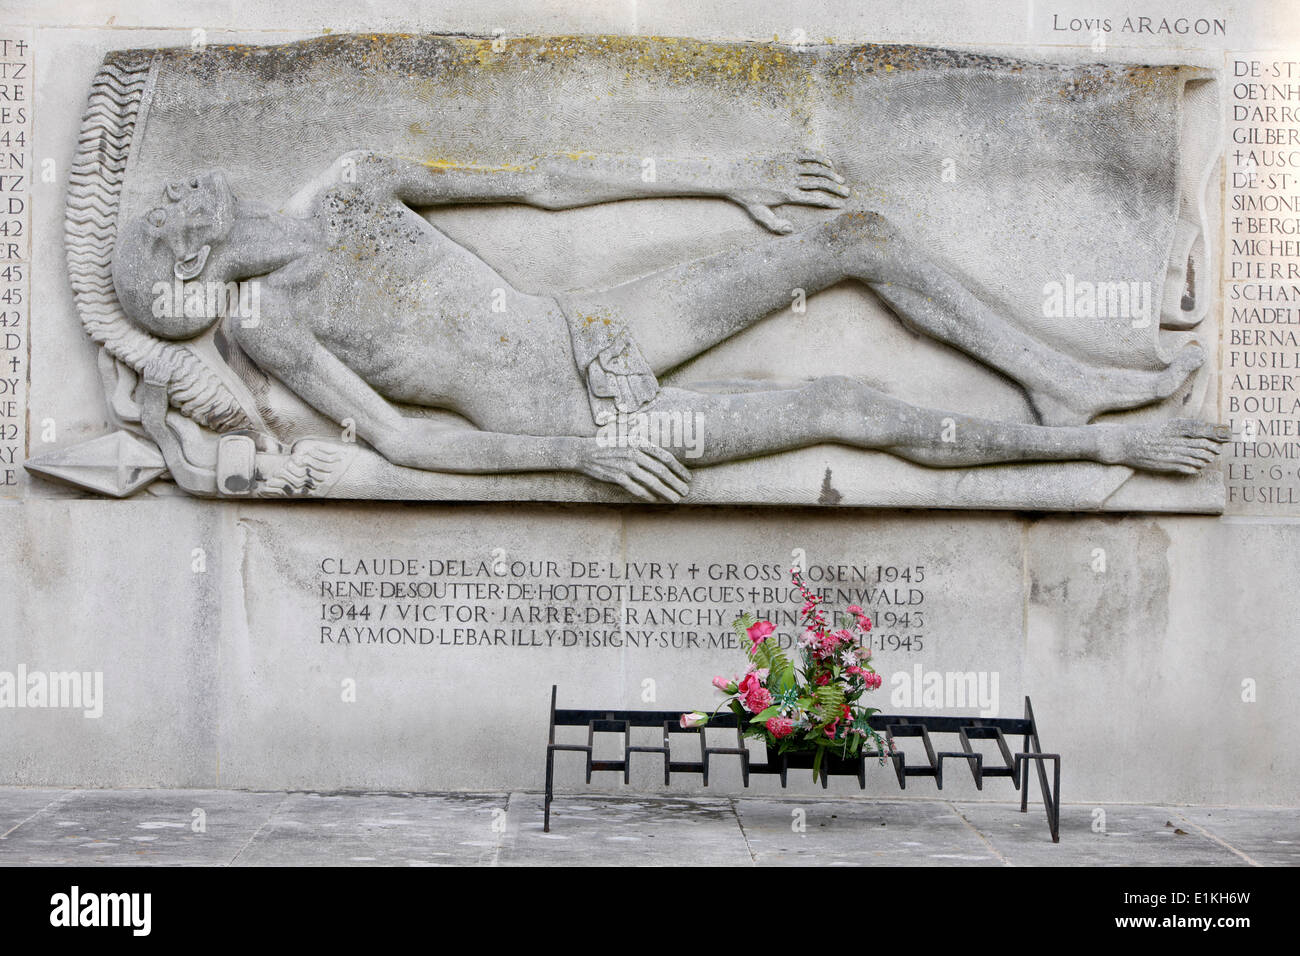 Seconde Guerre mondiale monument commémoratif - détail d'une sculpture par Ulysse Gemignani Banque D'Images